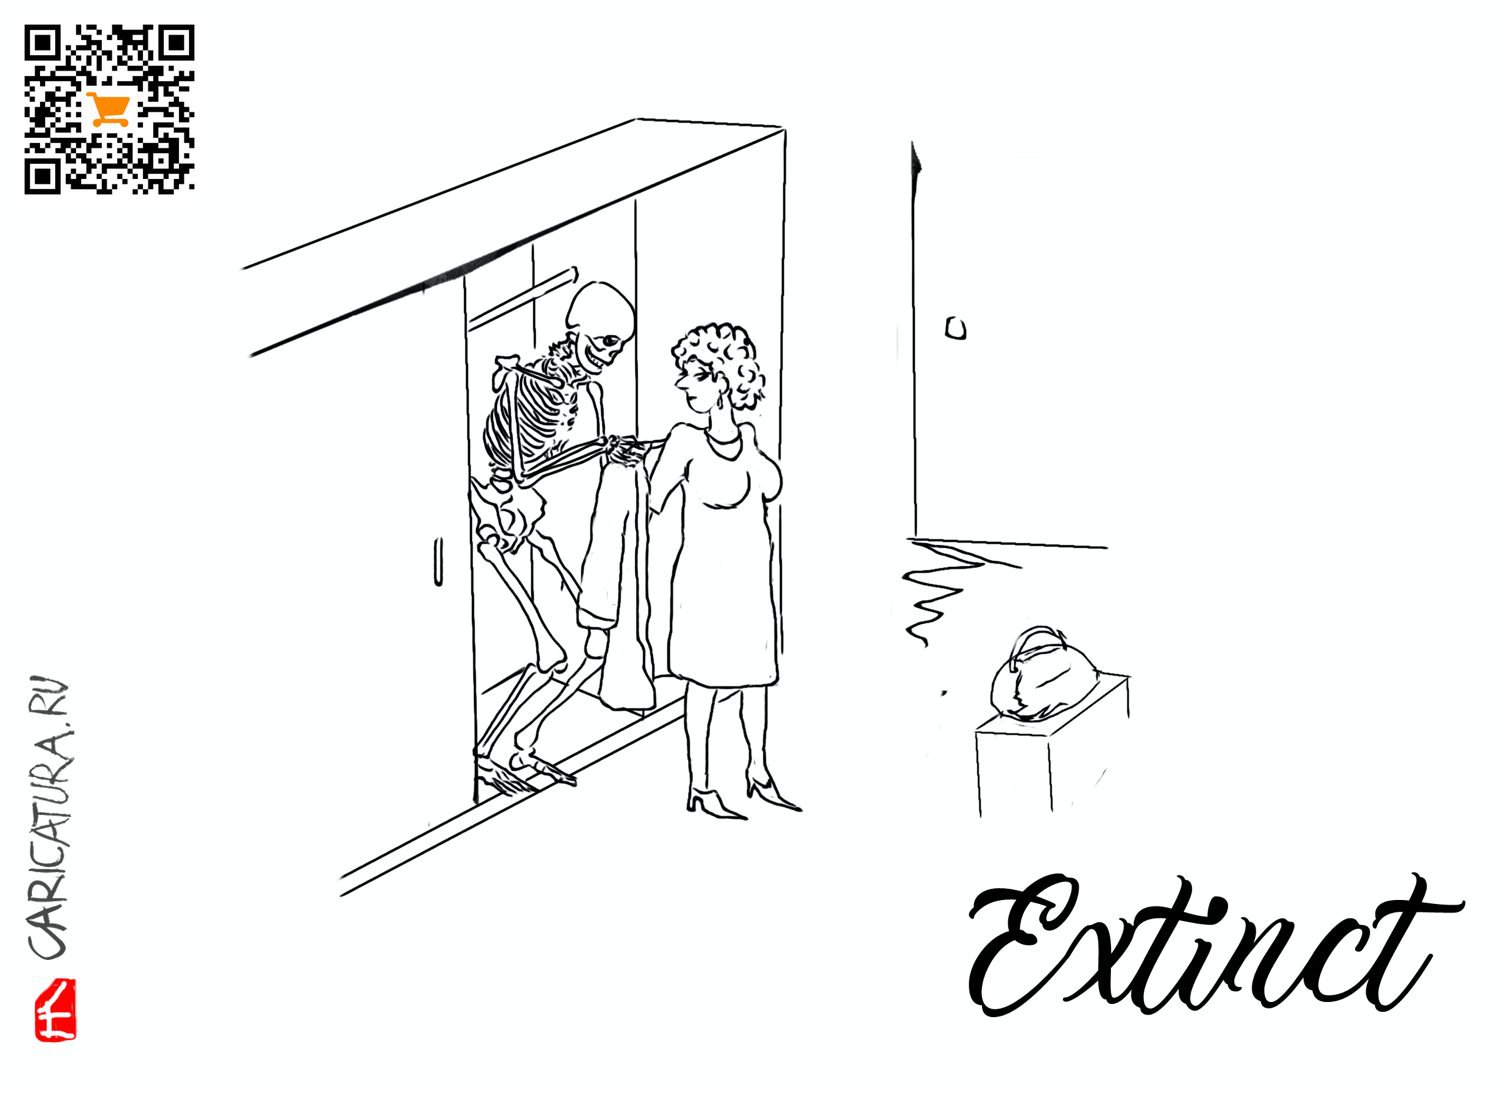 Карикатура "Скелет в шкафу", Евгений Лапин